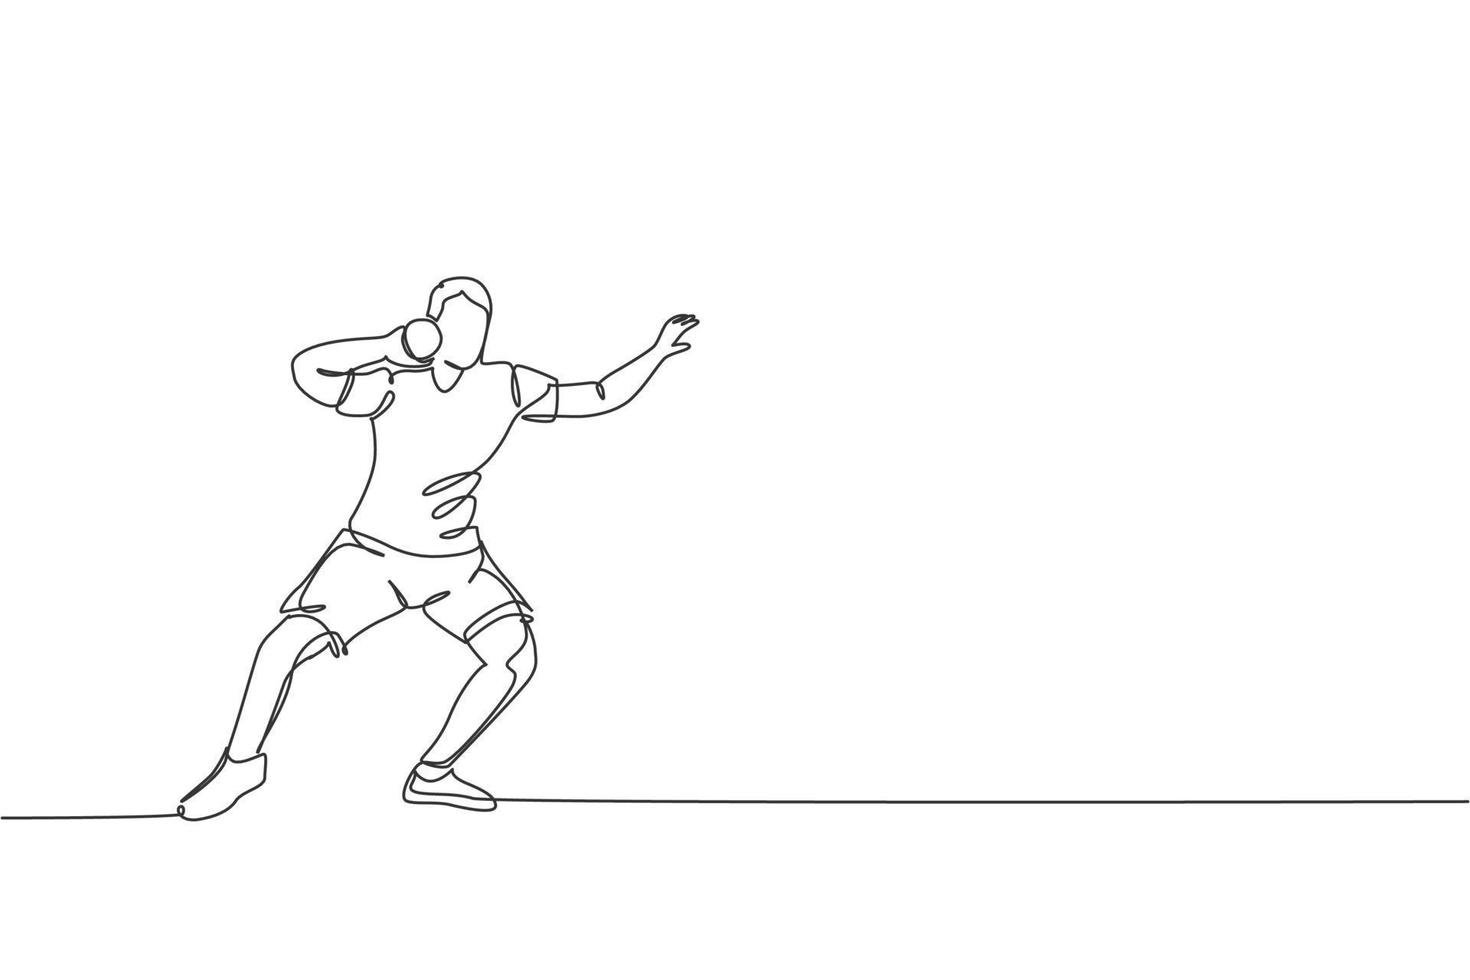 una línea continua dibujando a un joven deportista ejerciendo una postura antes de lanzar un tiro en el campo. juegos deportivos concepto de deporte olímpico. Ilustración de vector de diseño gráfico de dibujo de línea única dinámica